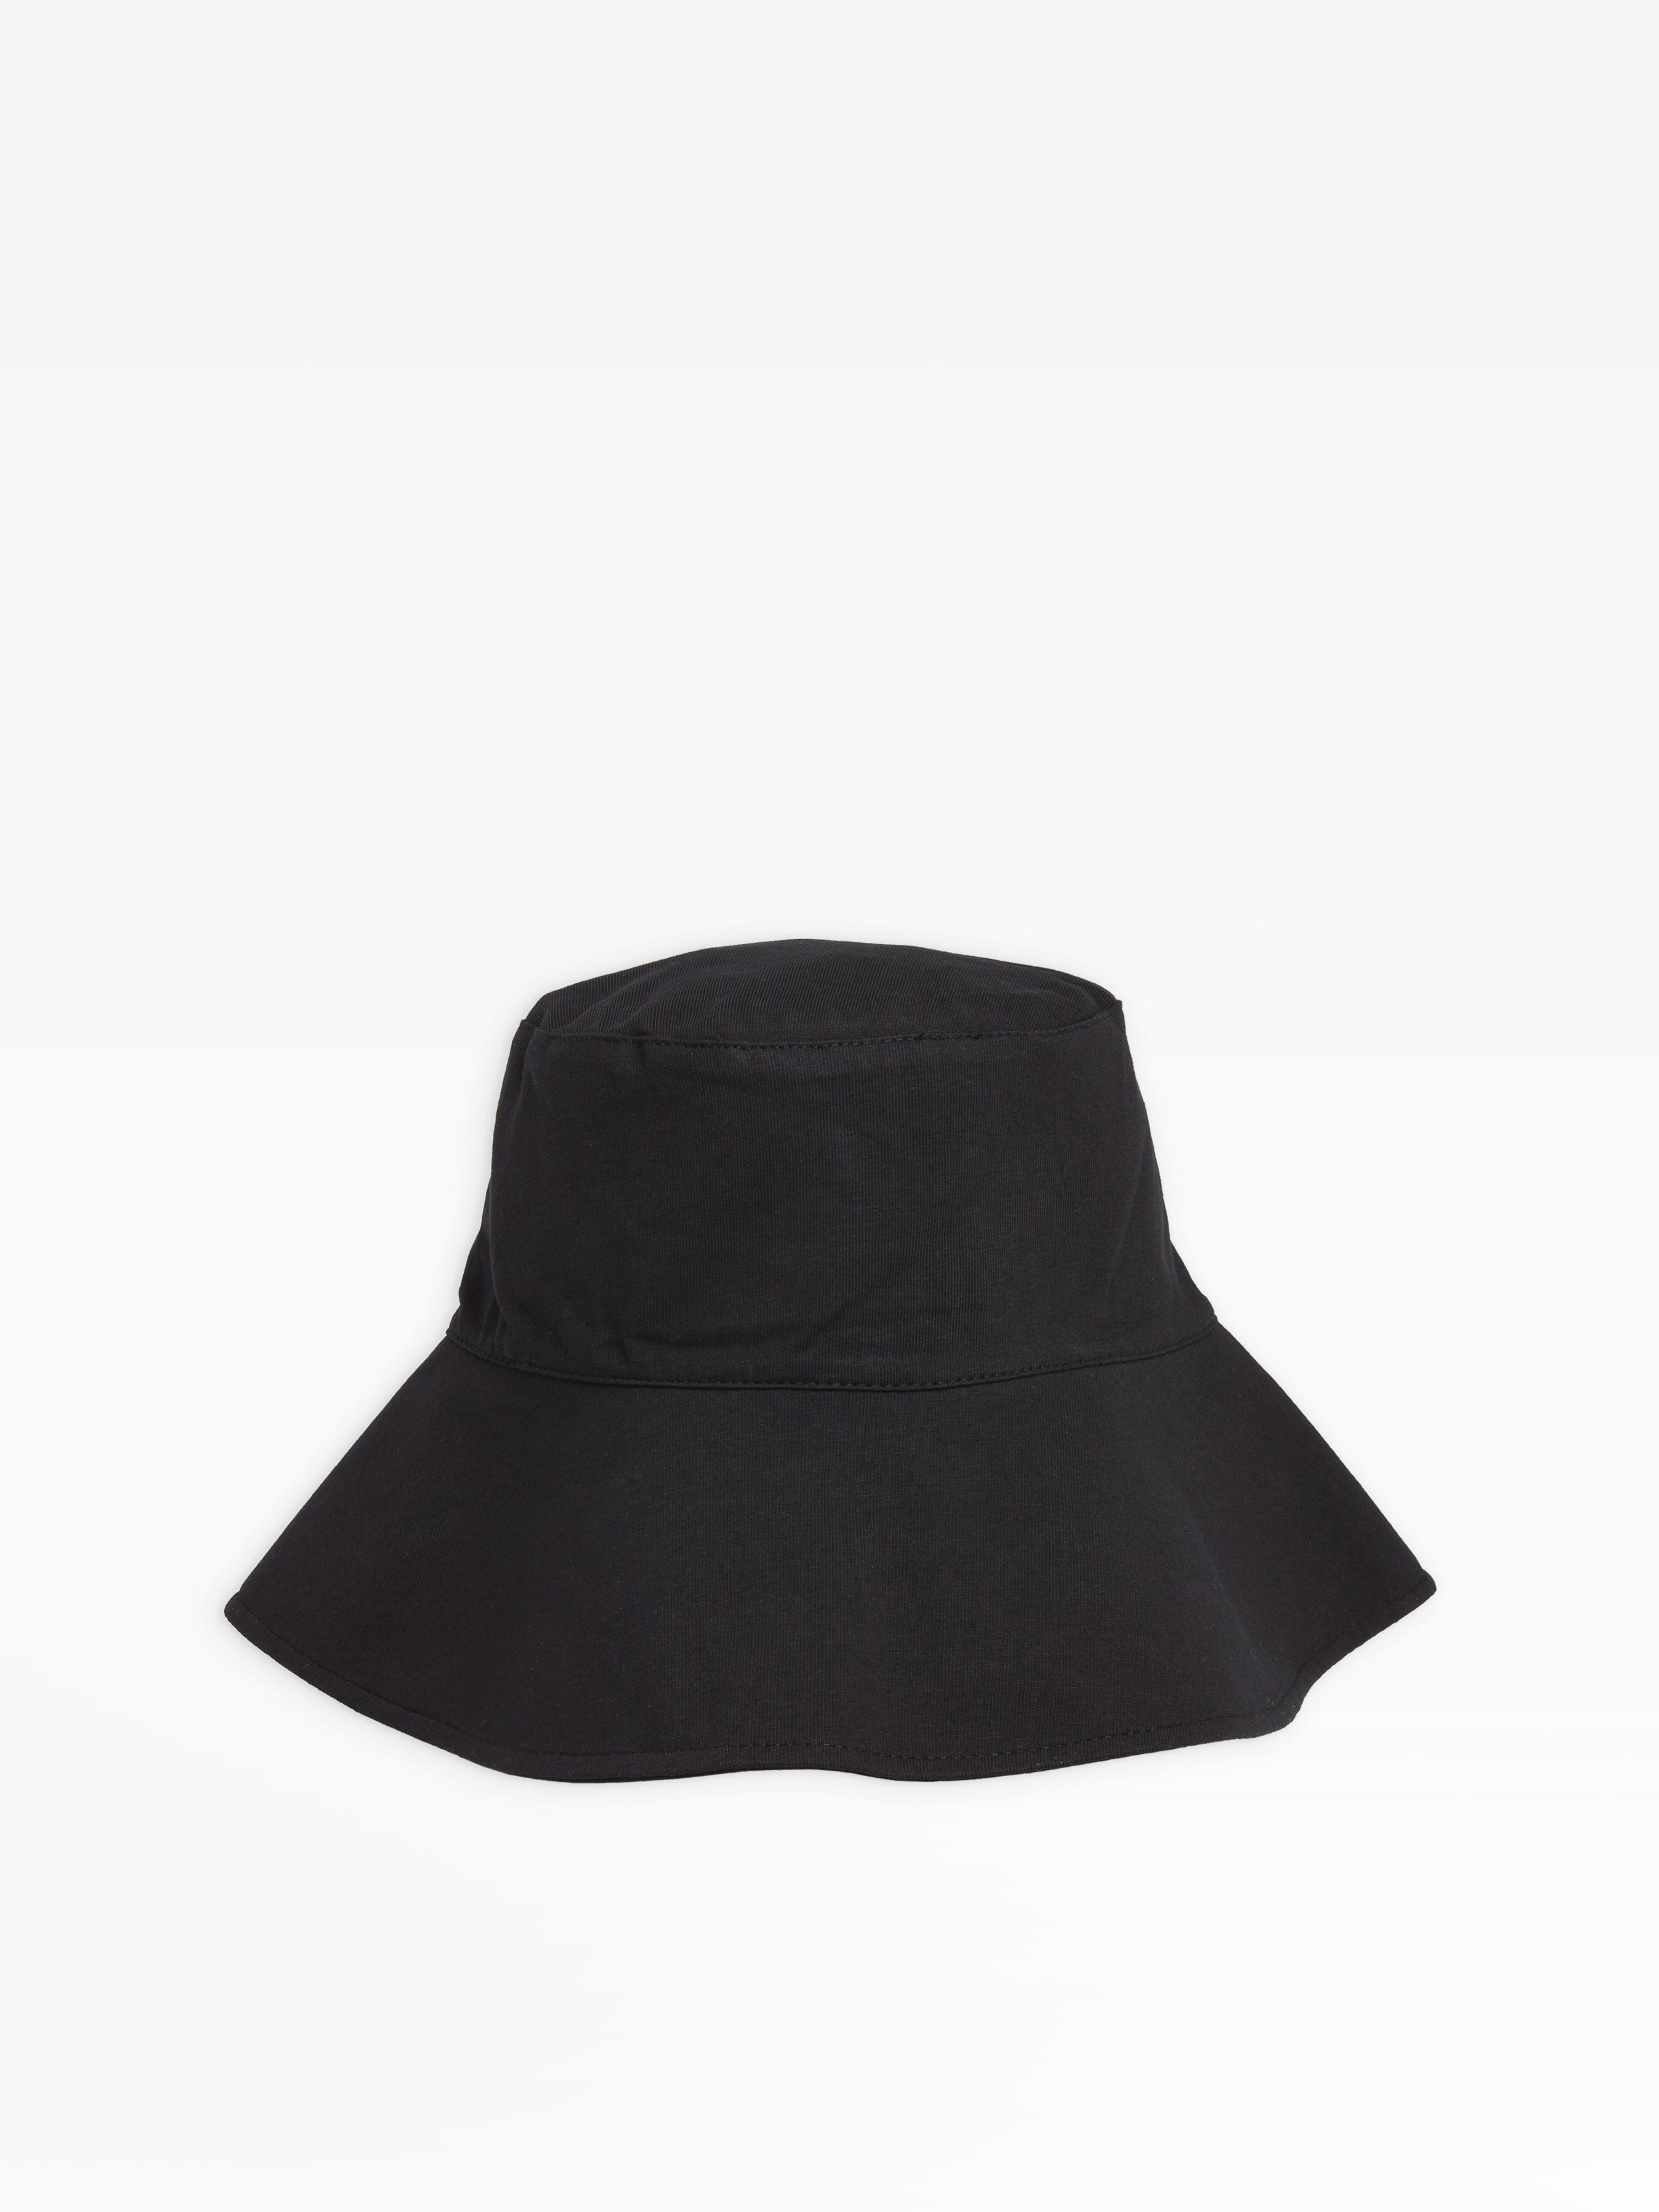 black Monique hat